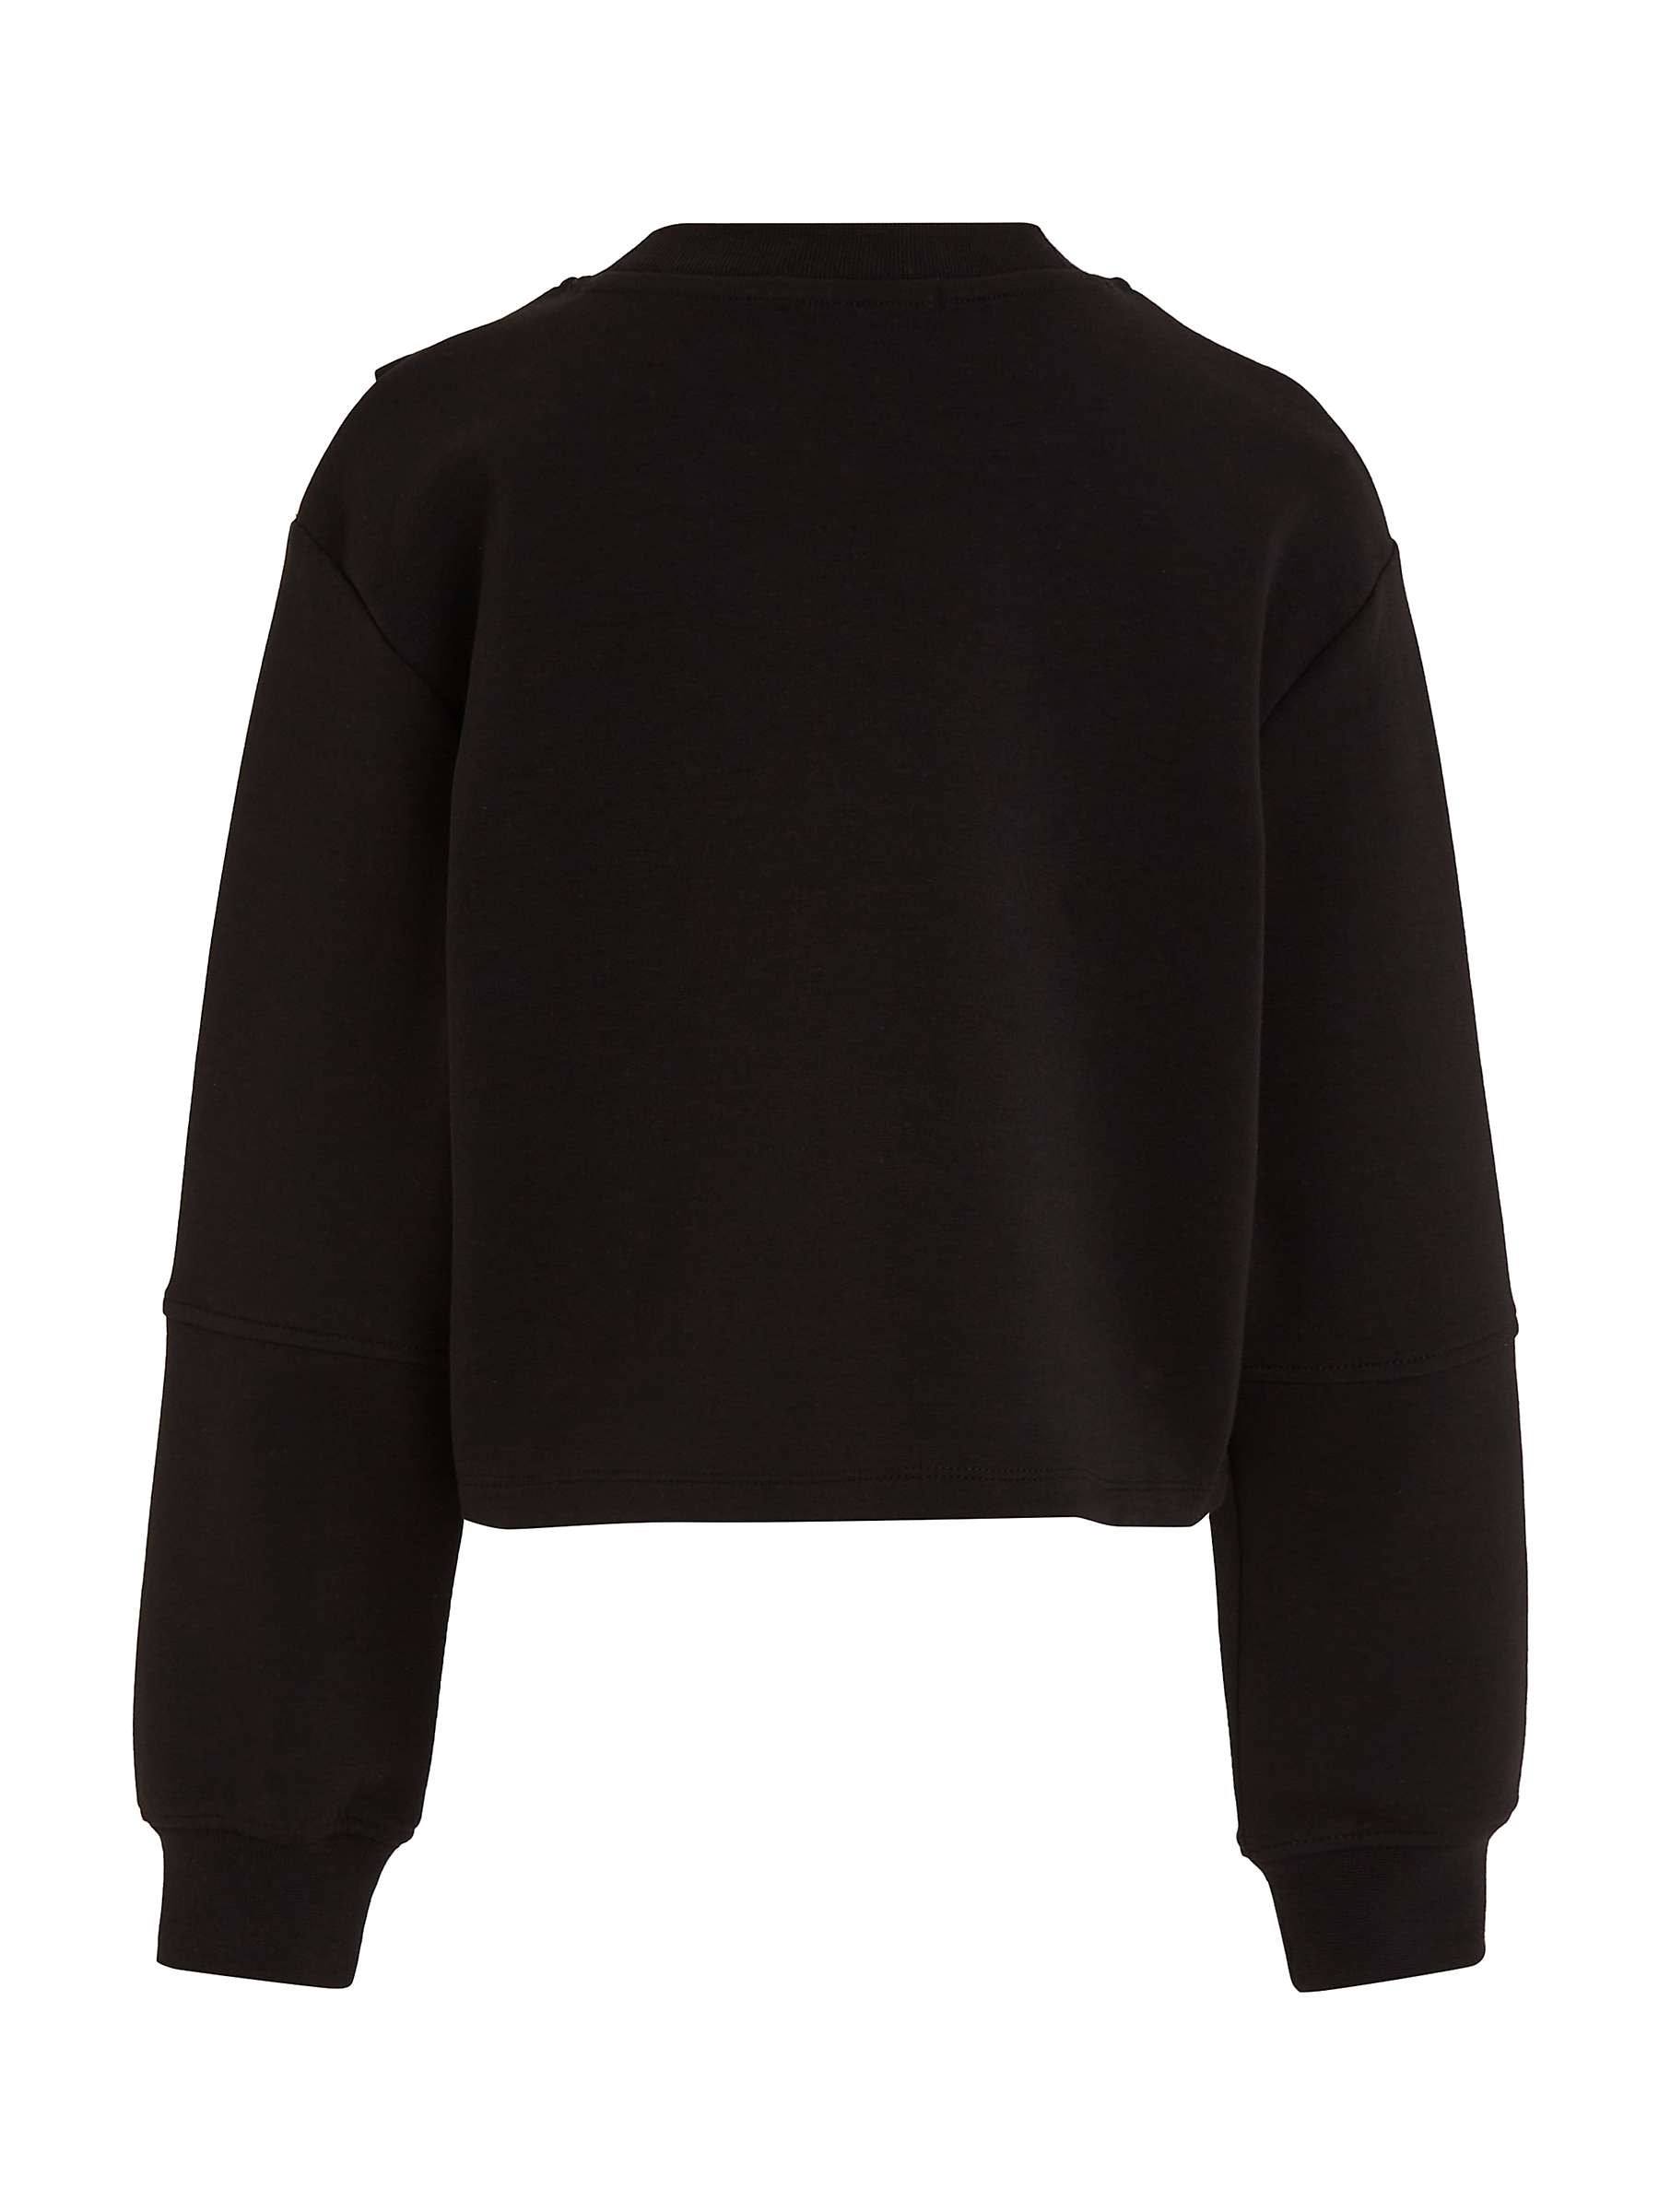 Buy Calvin Klein Kids' CK Boxy Cross Over Sweatshirt, Ck Black Online at johnlewis.com